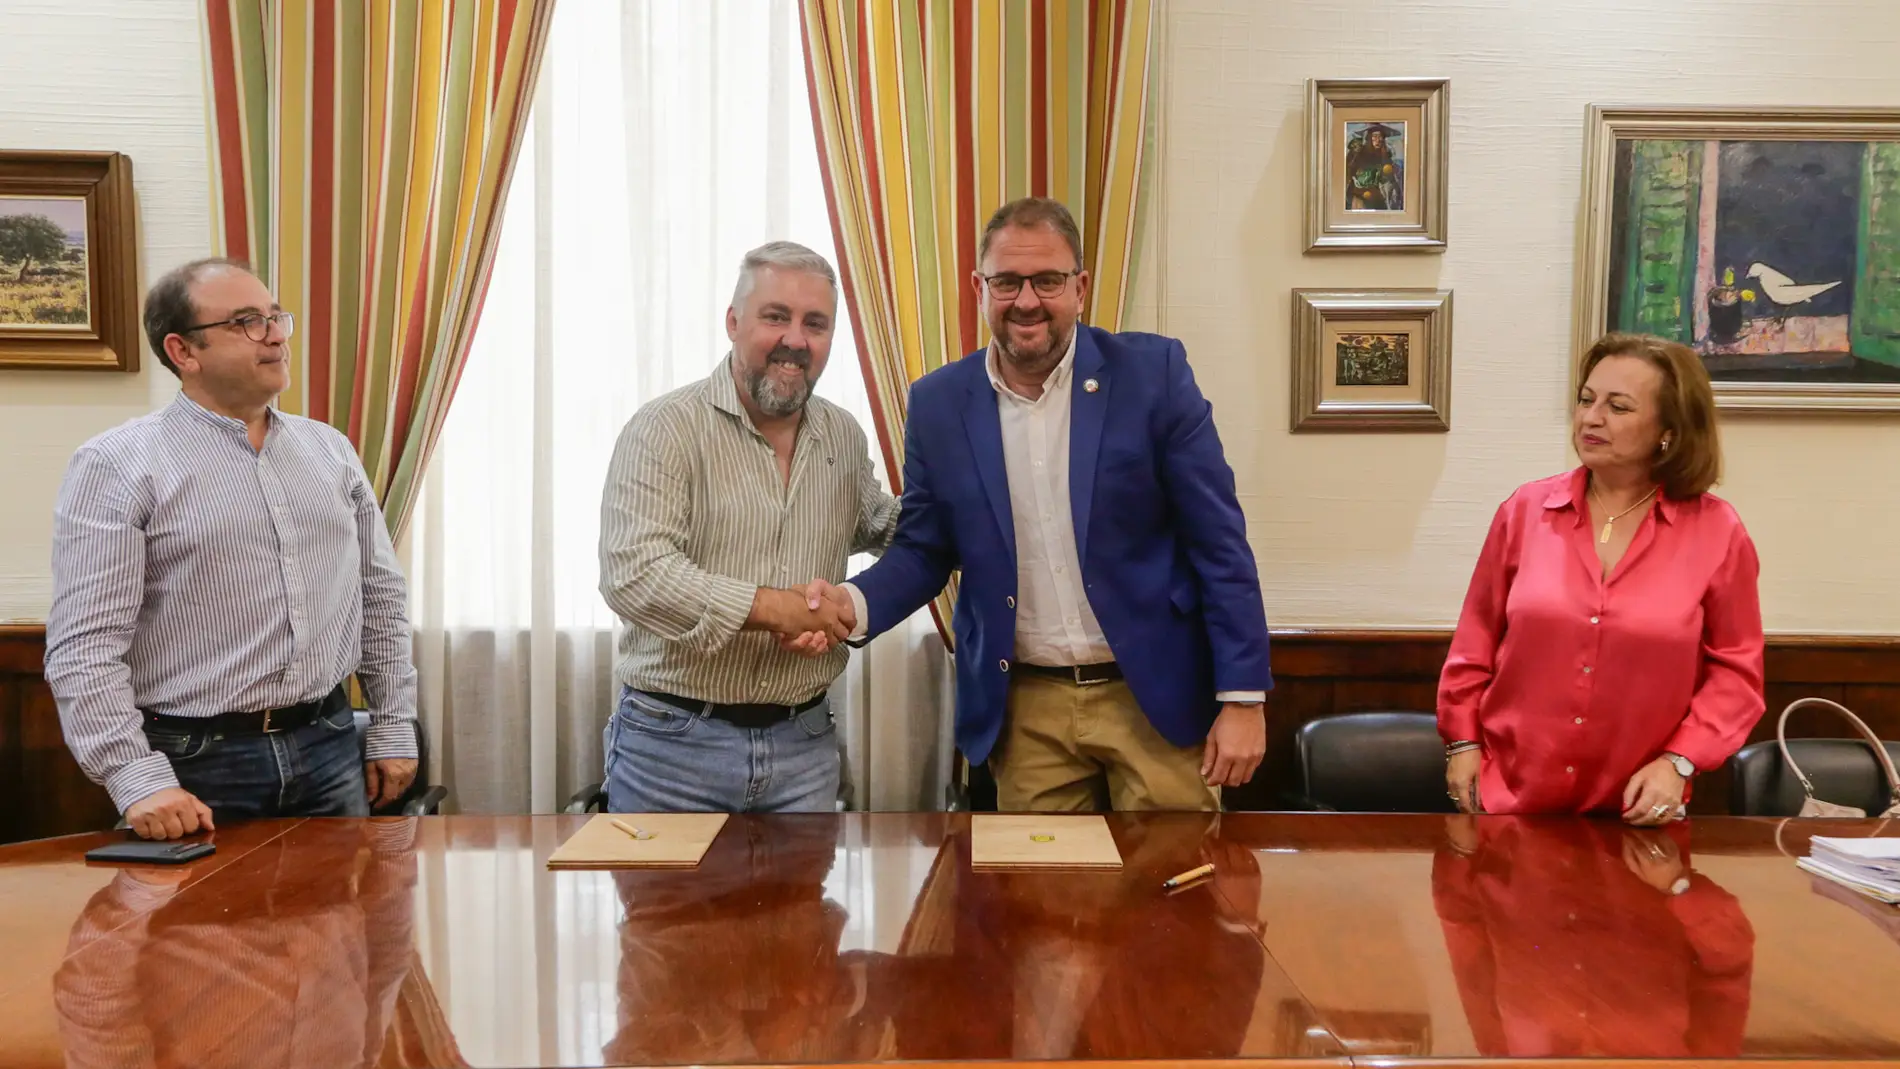 El presidente de la Plataforma del Voluntariado de Mérida, David Tobaja, y el alcalde, Antonio Rodríguez Osuna, tras la firma del convenio